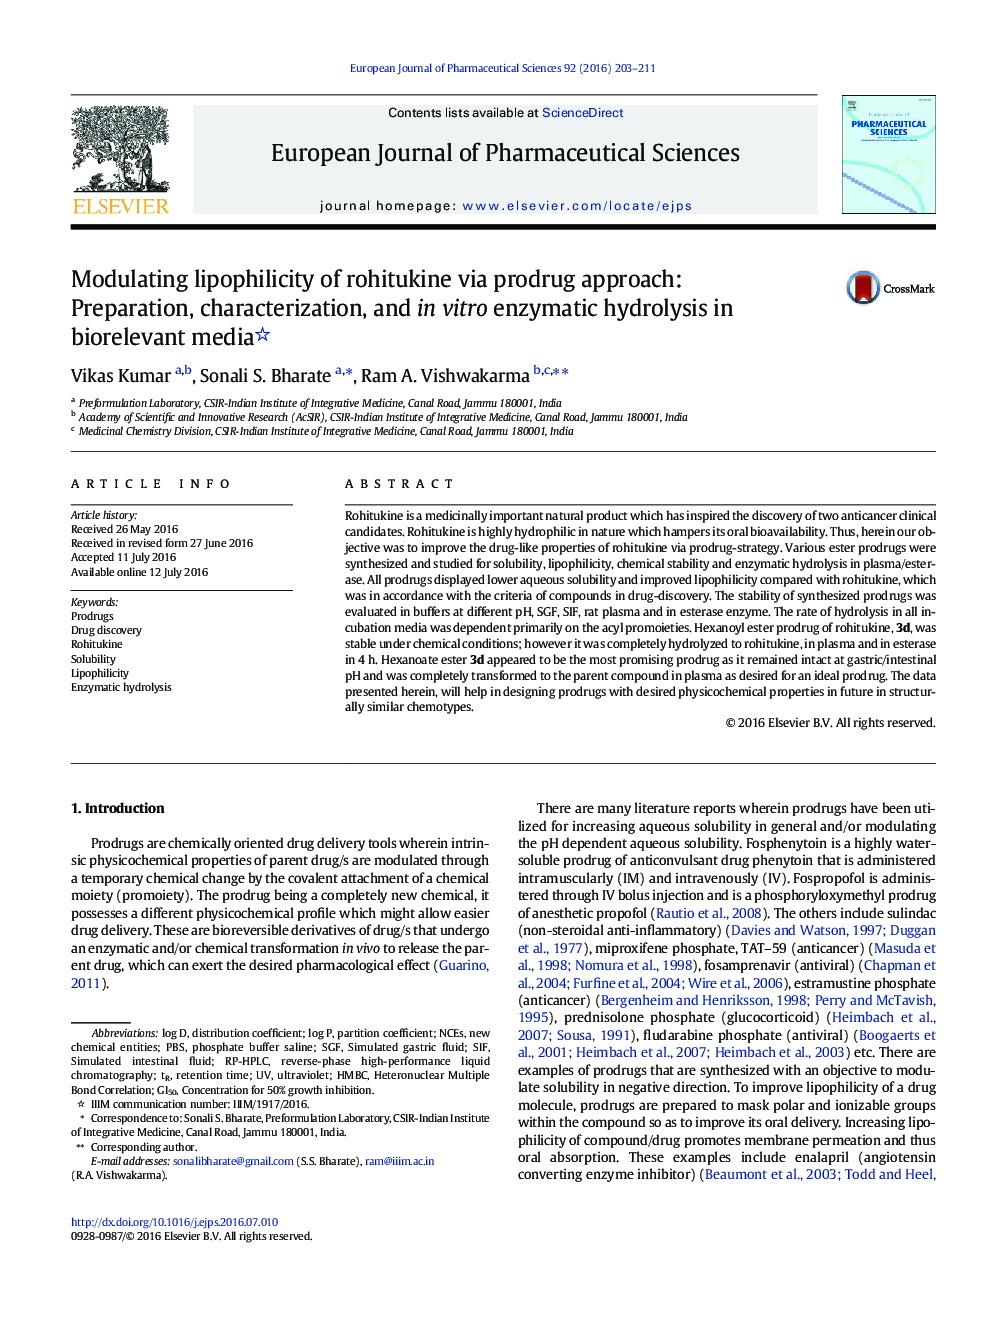 مدلسازی لیپوفیزیسم روتیکون از طریق روش پیشگیری: آماده سازی، مشخص کردن و هیدرولیز آنزیمی در محیط آزمایشگاهی در محیط بیولوژیک 